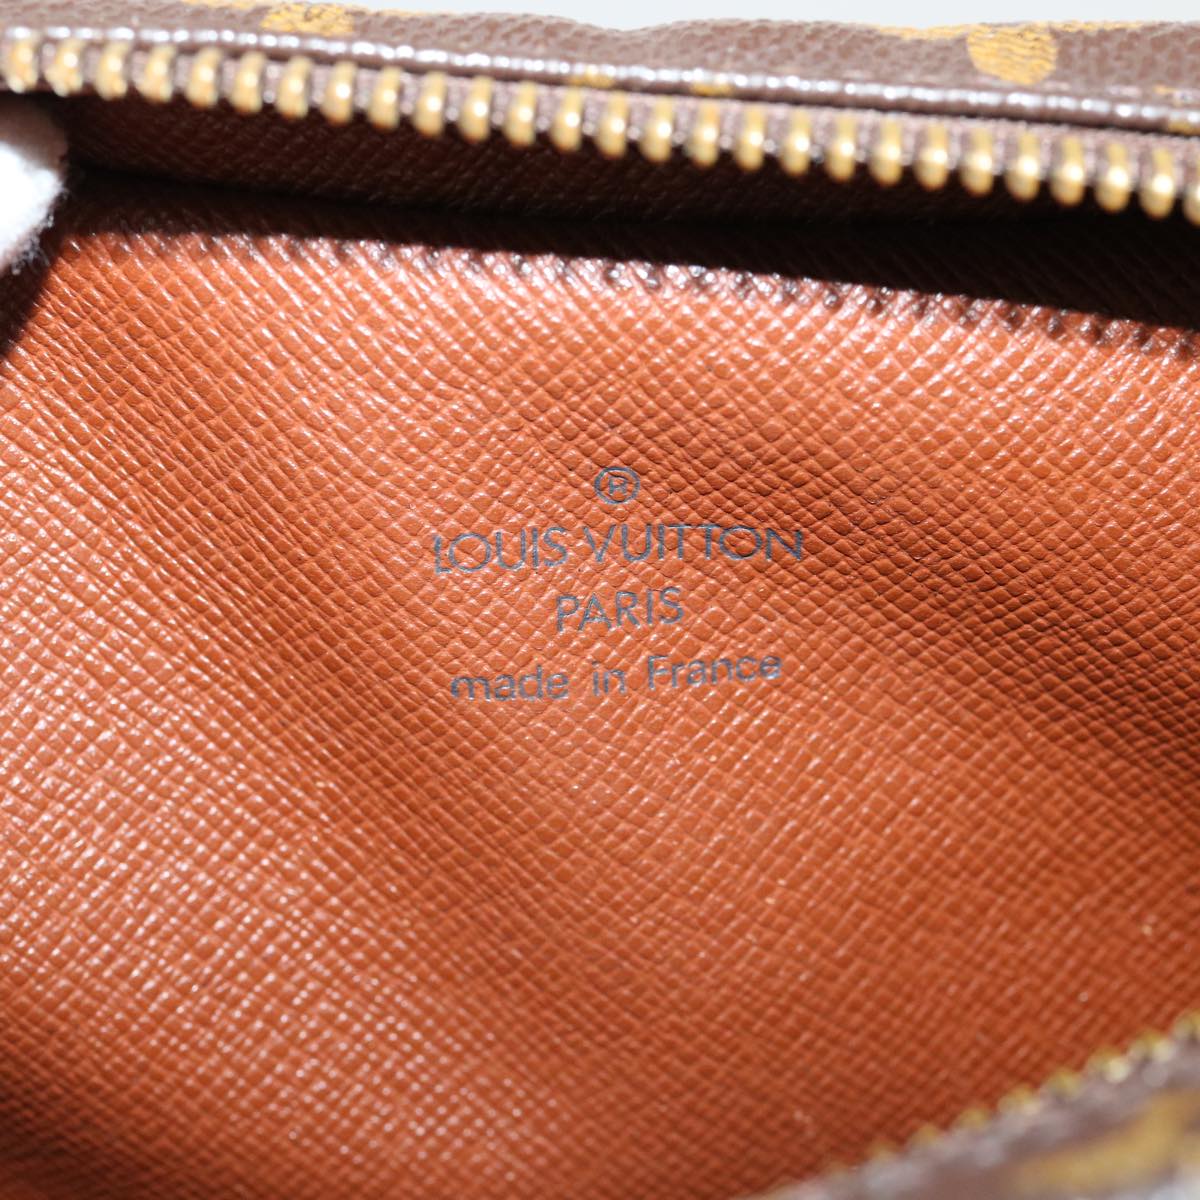 LOUIS VUITTON Monogram Amazon Shoulder Bag M45236 LV Auth 34760